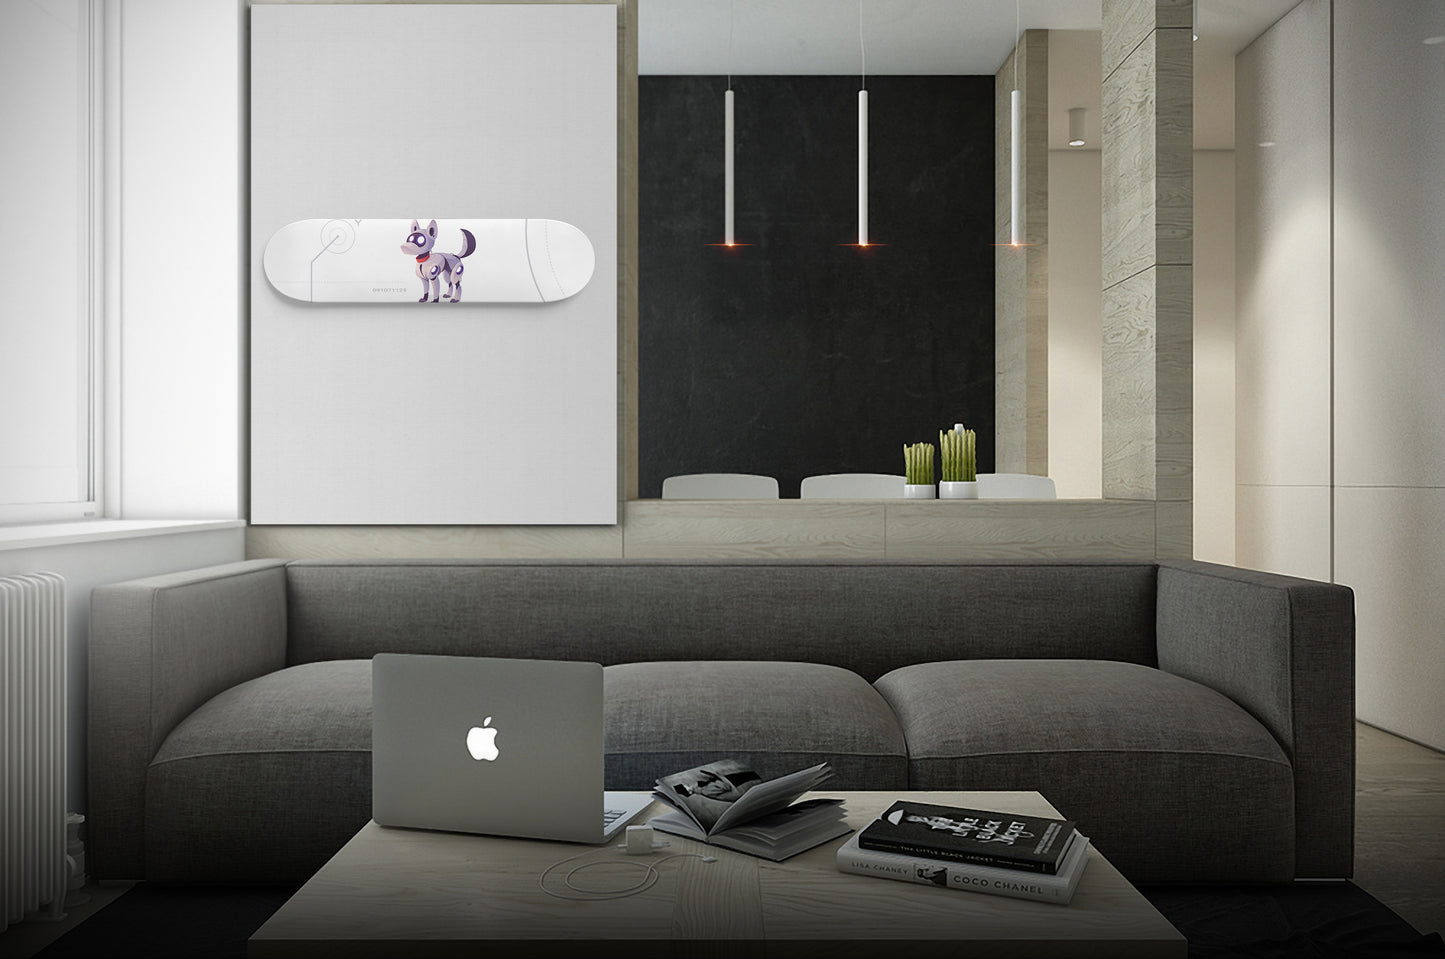 Mechanical Animals inspired - 'Dog robot' - Skateboard Wall Art